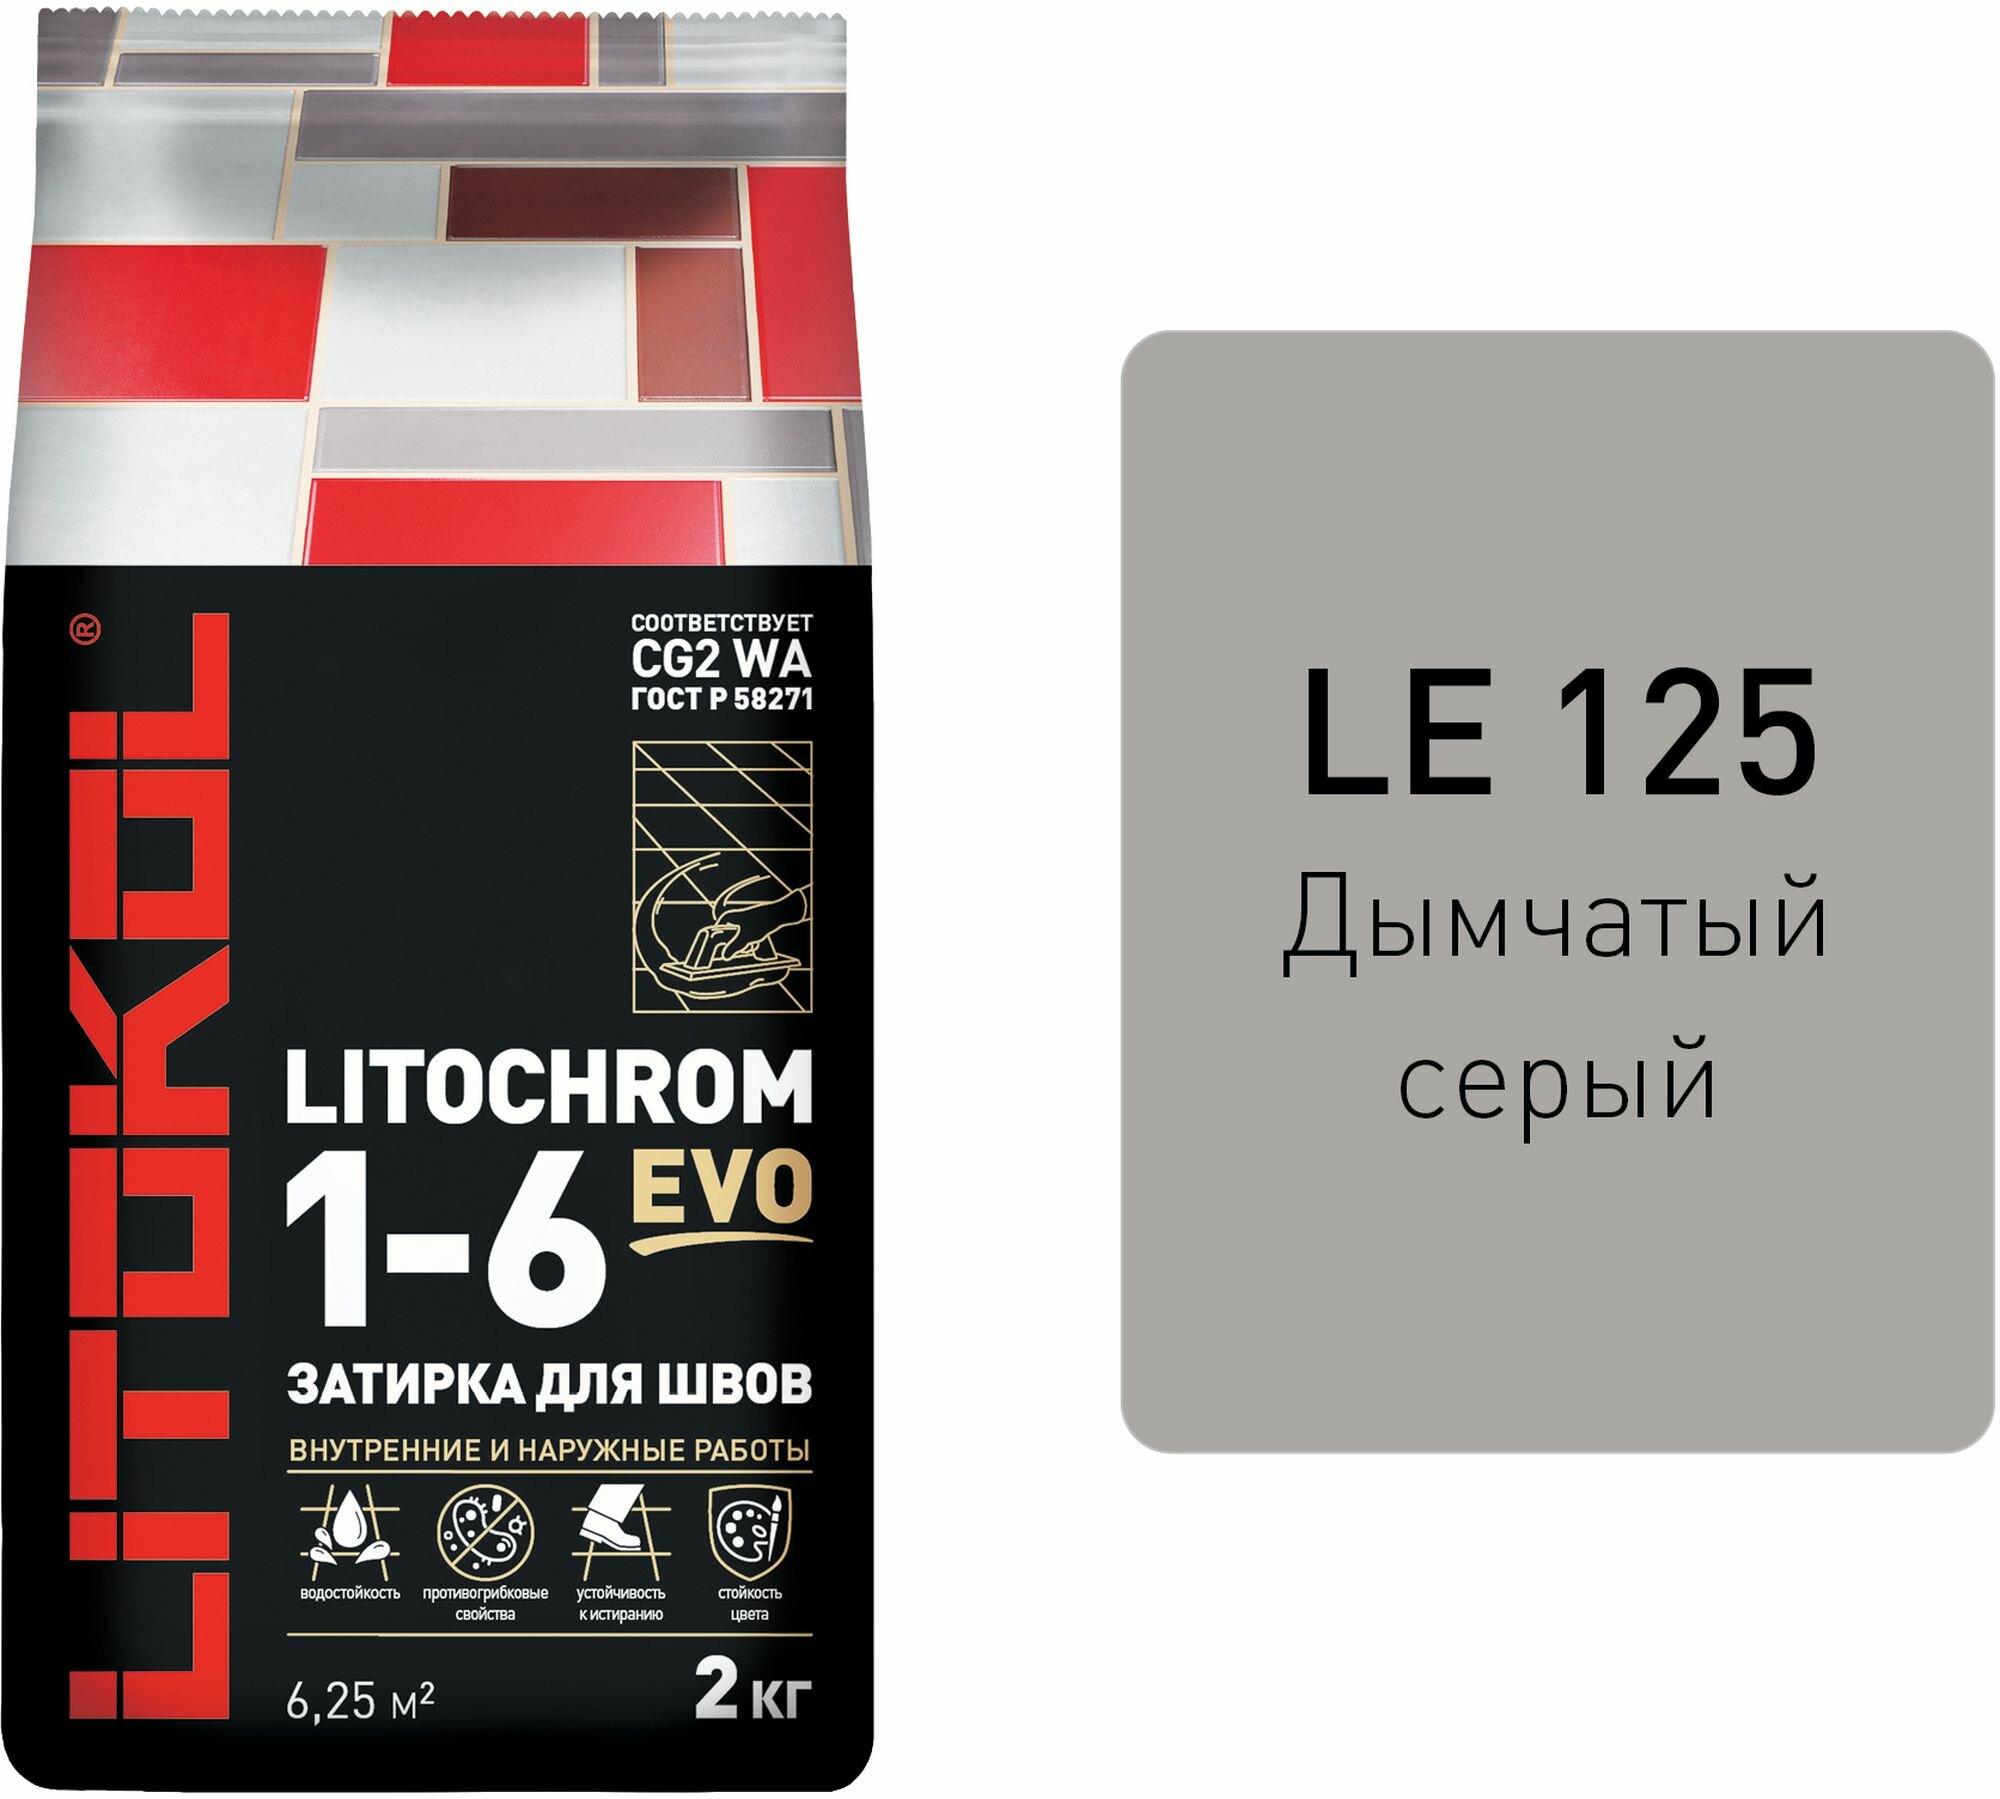 Затирка цементная LITOKOL LITOCHROM 1-6 EVO цвет LE 125 дымчатый серый 2 кг